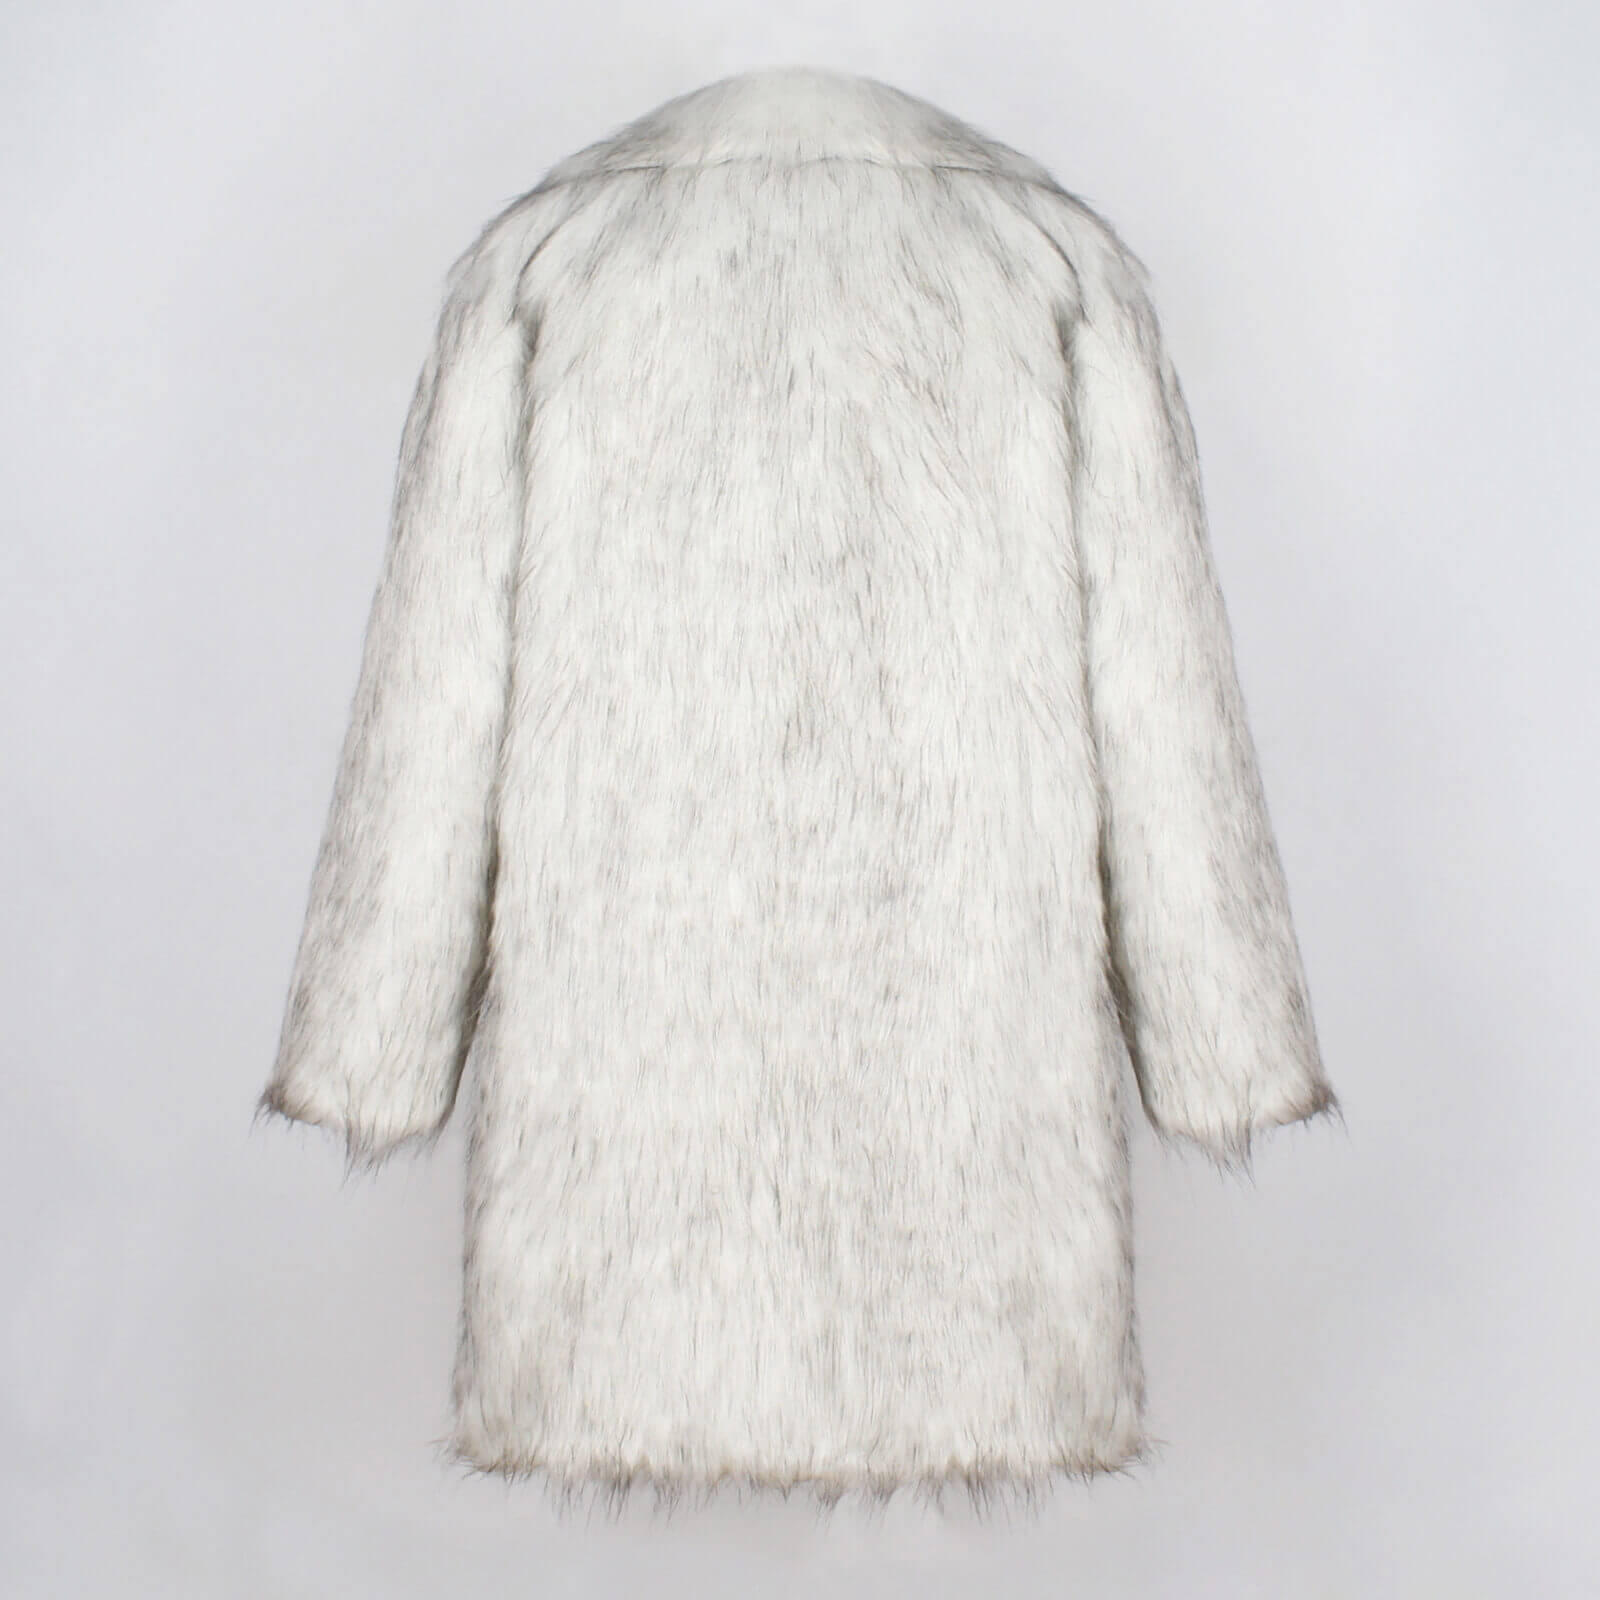 Ryan Gosling Faux Fur Coat Genuine Men's Thick Fleece Long Sleeve Coats Halloween Cosplay Costume